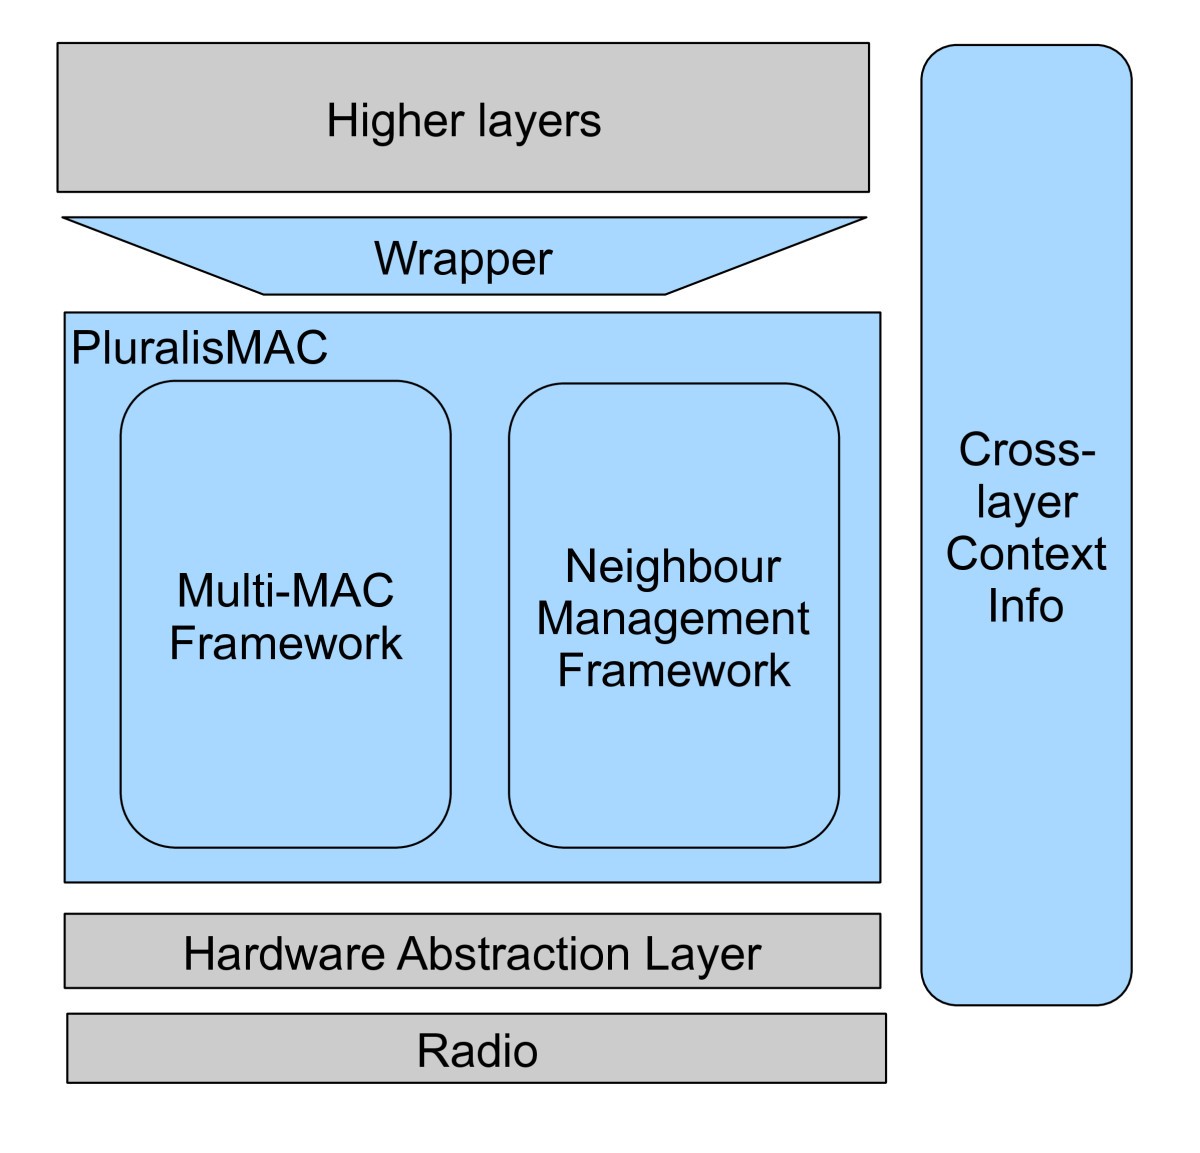 net framework for mac